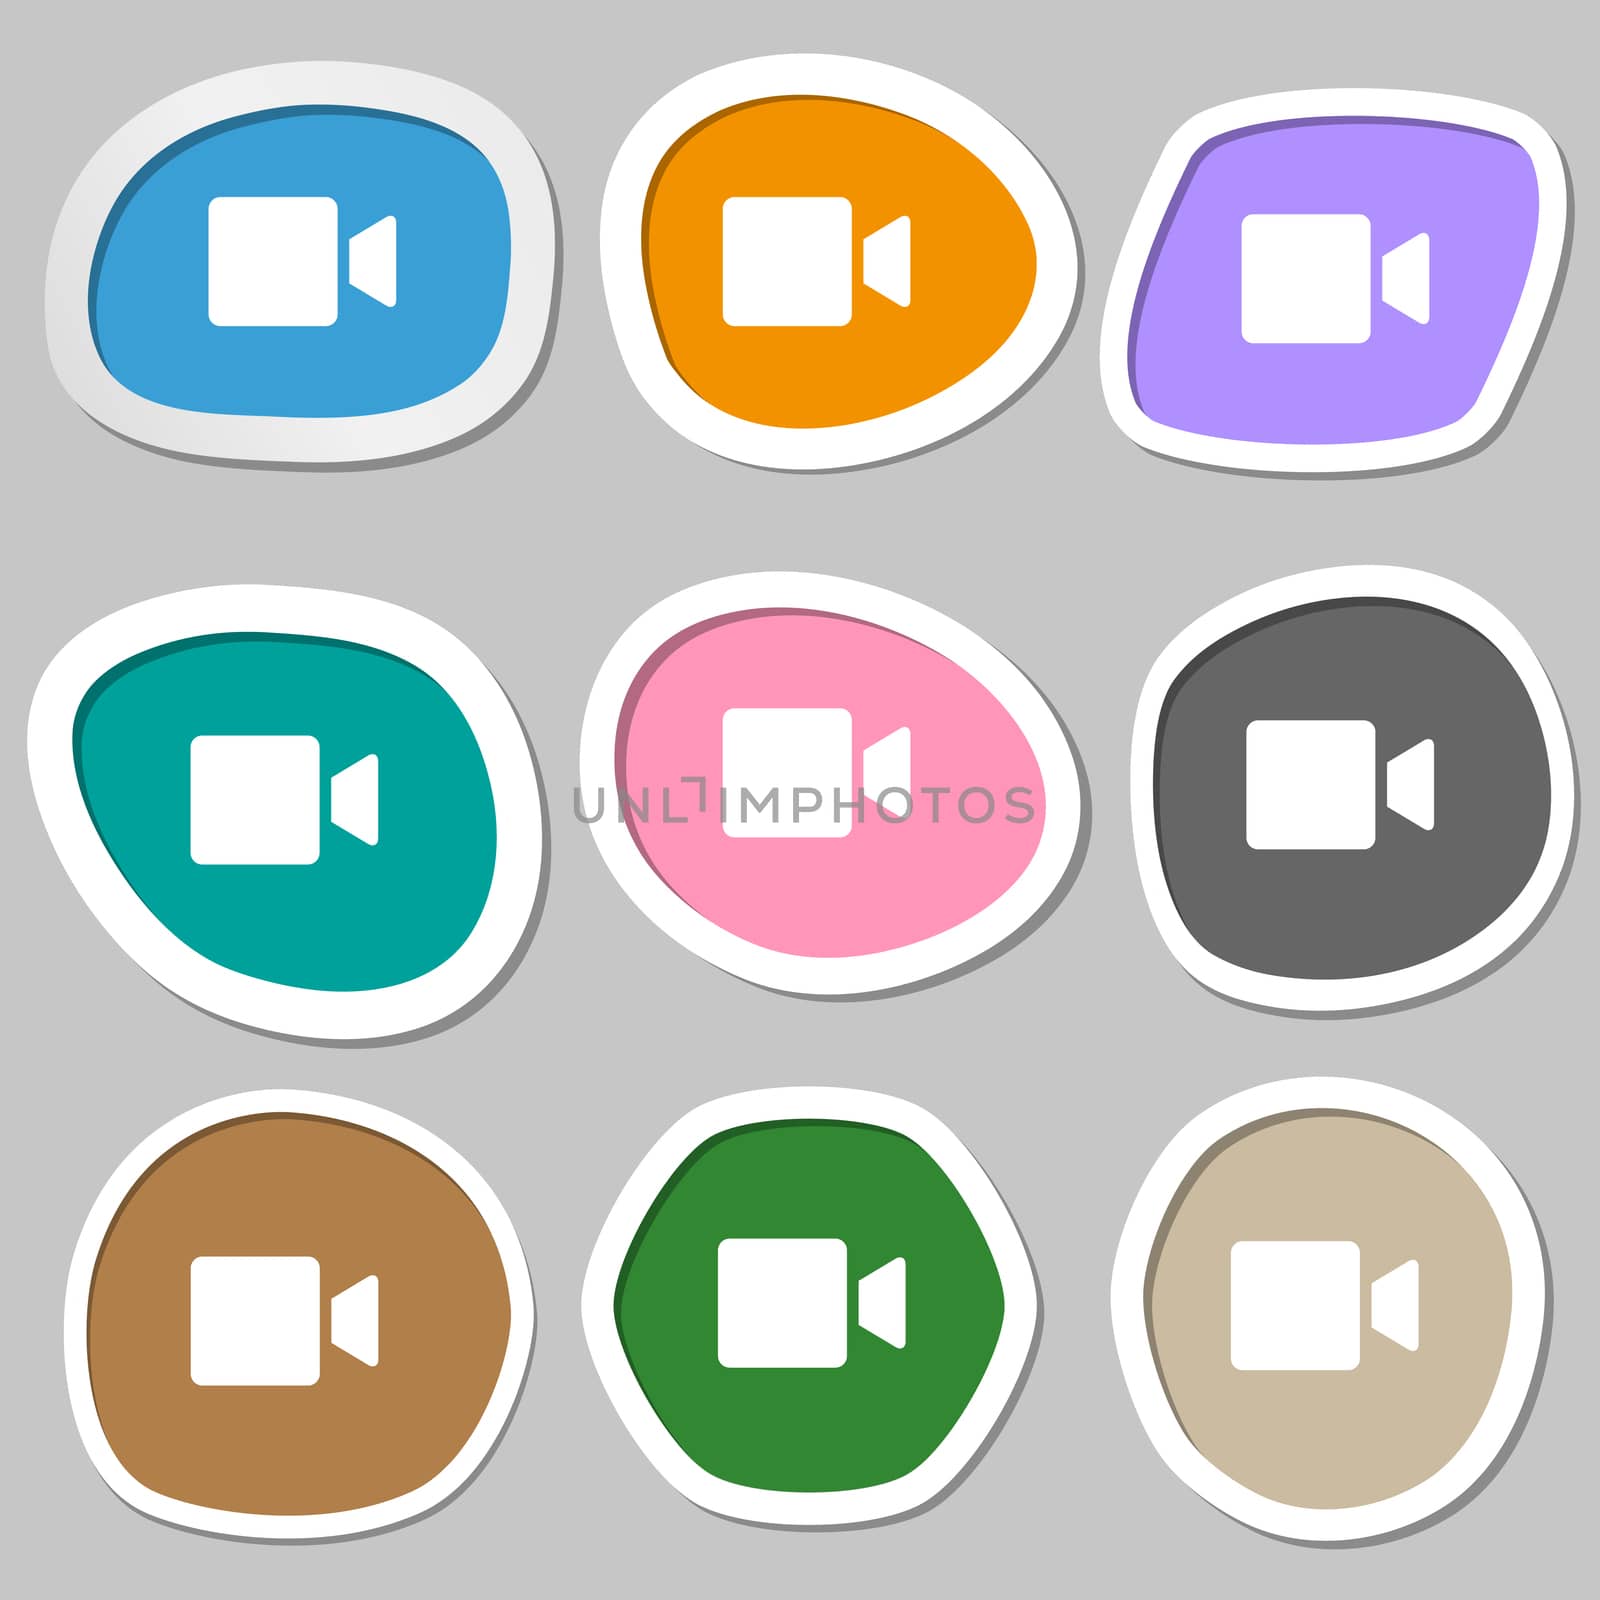 Video camera icon symbols. Multicolored paper stickers. illustration